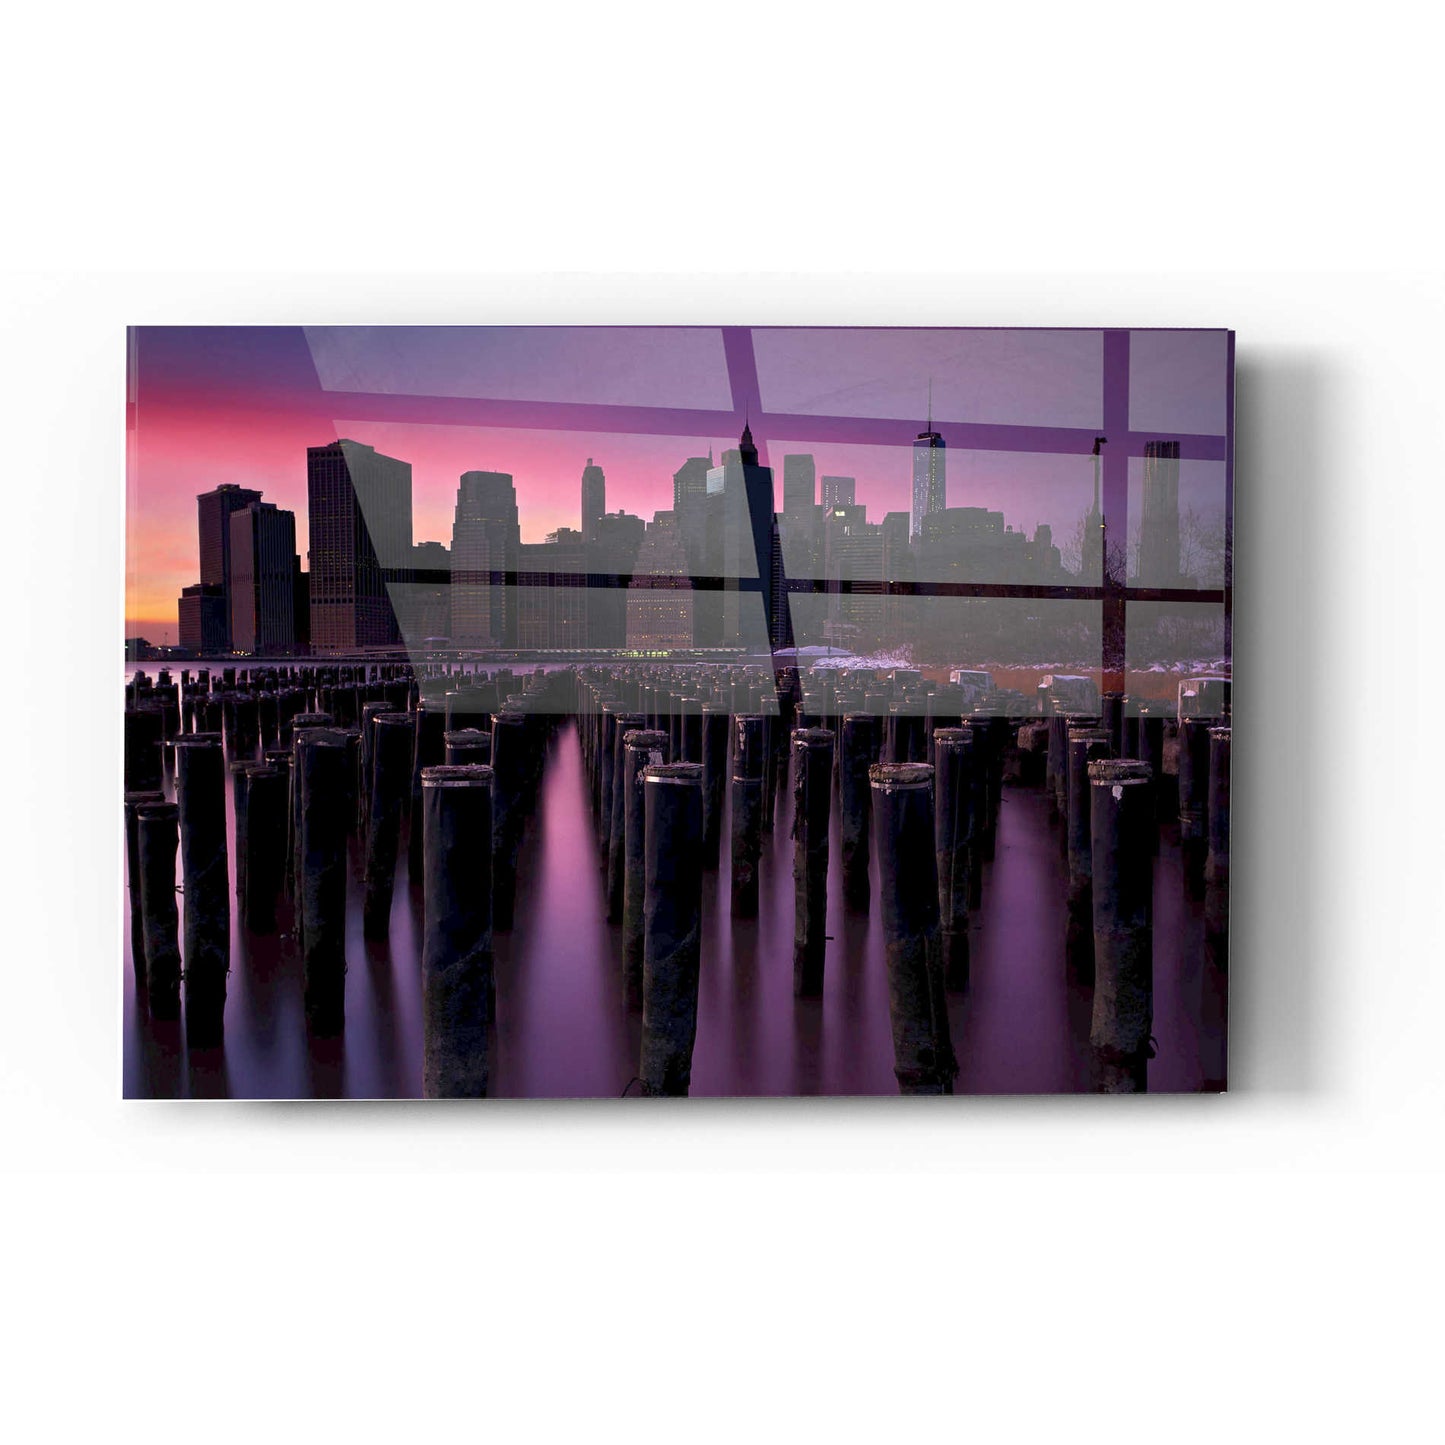 Epic Art 'Manhattan Glow' by Katherine Gendreau, Acrylic Glass Wall Art,12x16